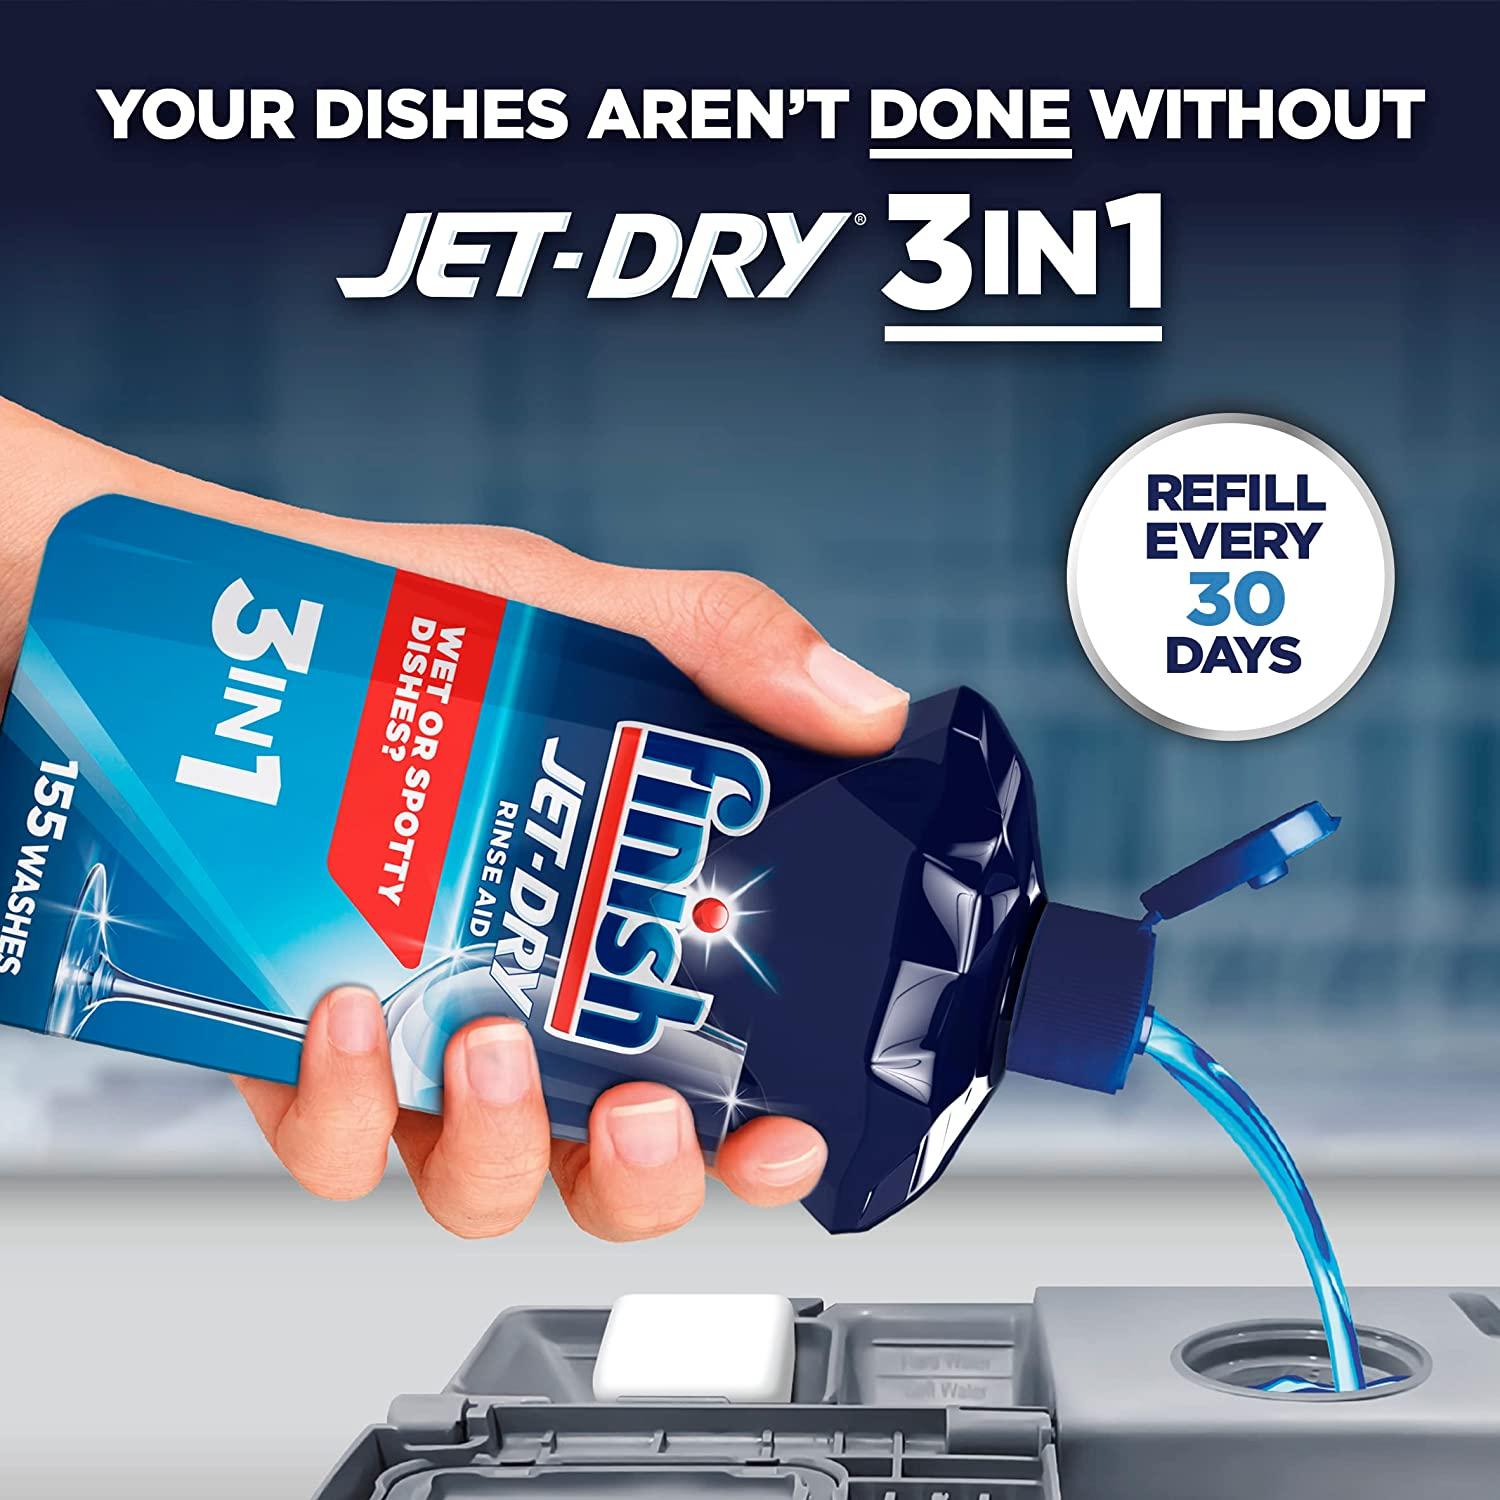 Finish - Finish, Quantum/Jet-Dry - Detergent & Rinse Aid, Shop